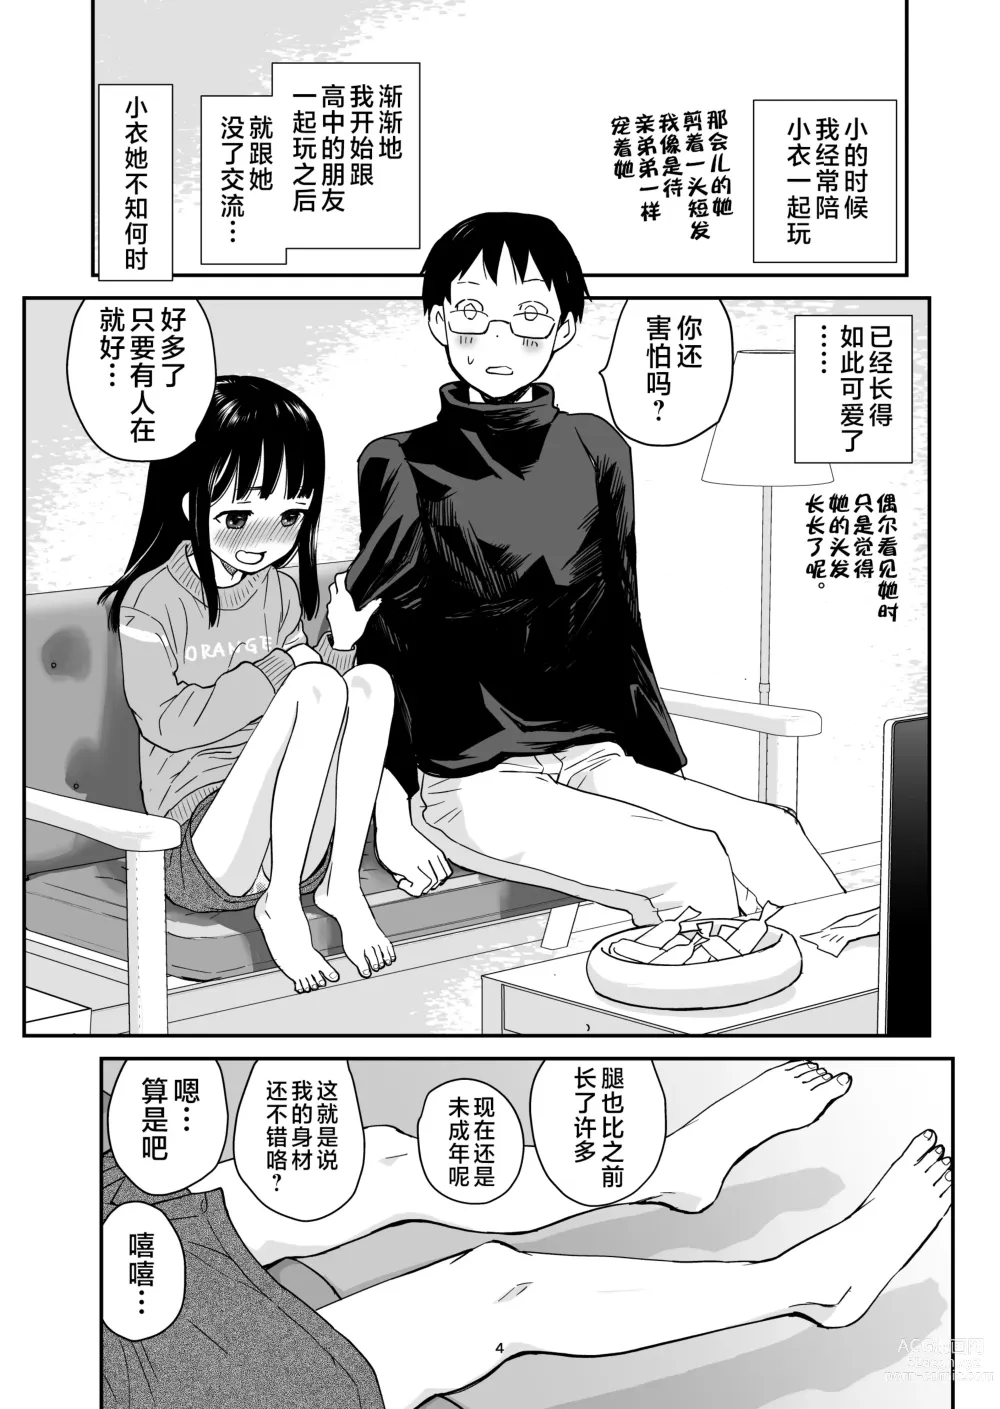 Page 4 of doujinshi ORANGE